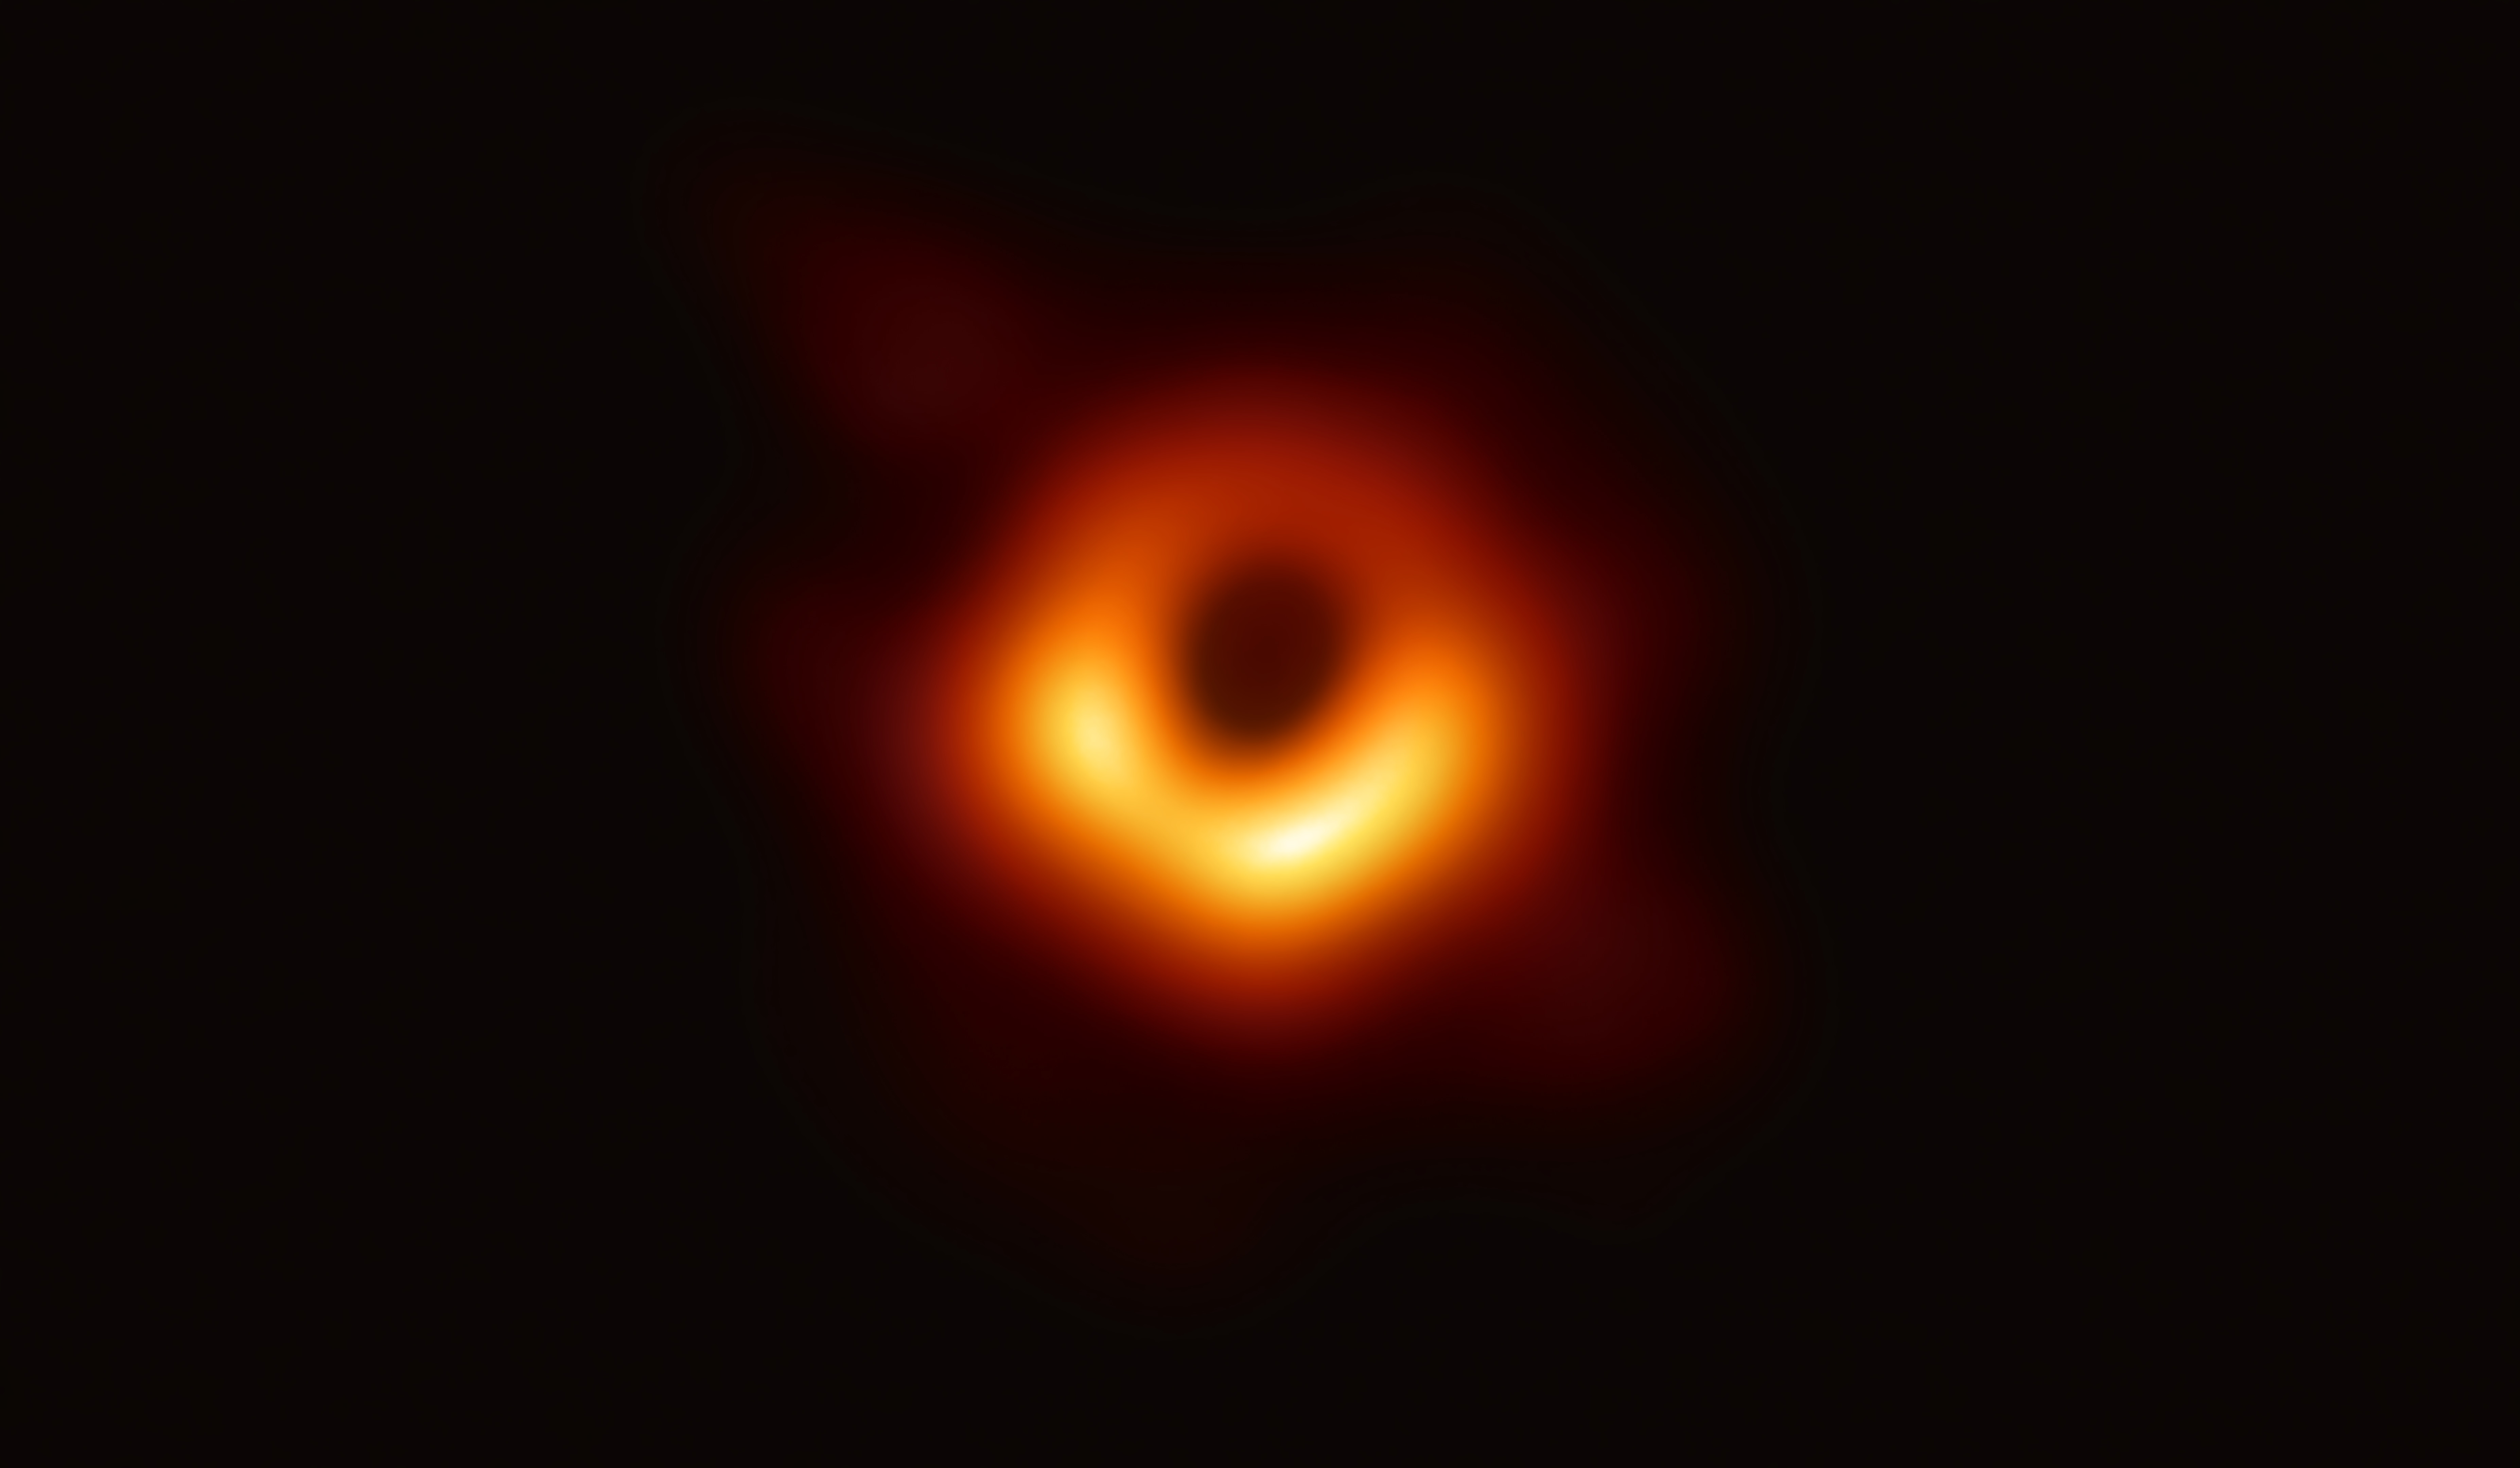 De schaduw van het zwarte gat M87* wiebelt